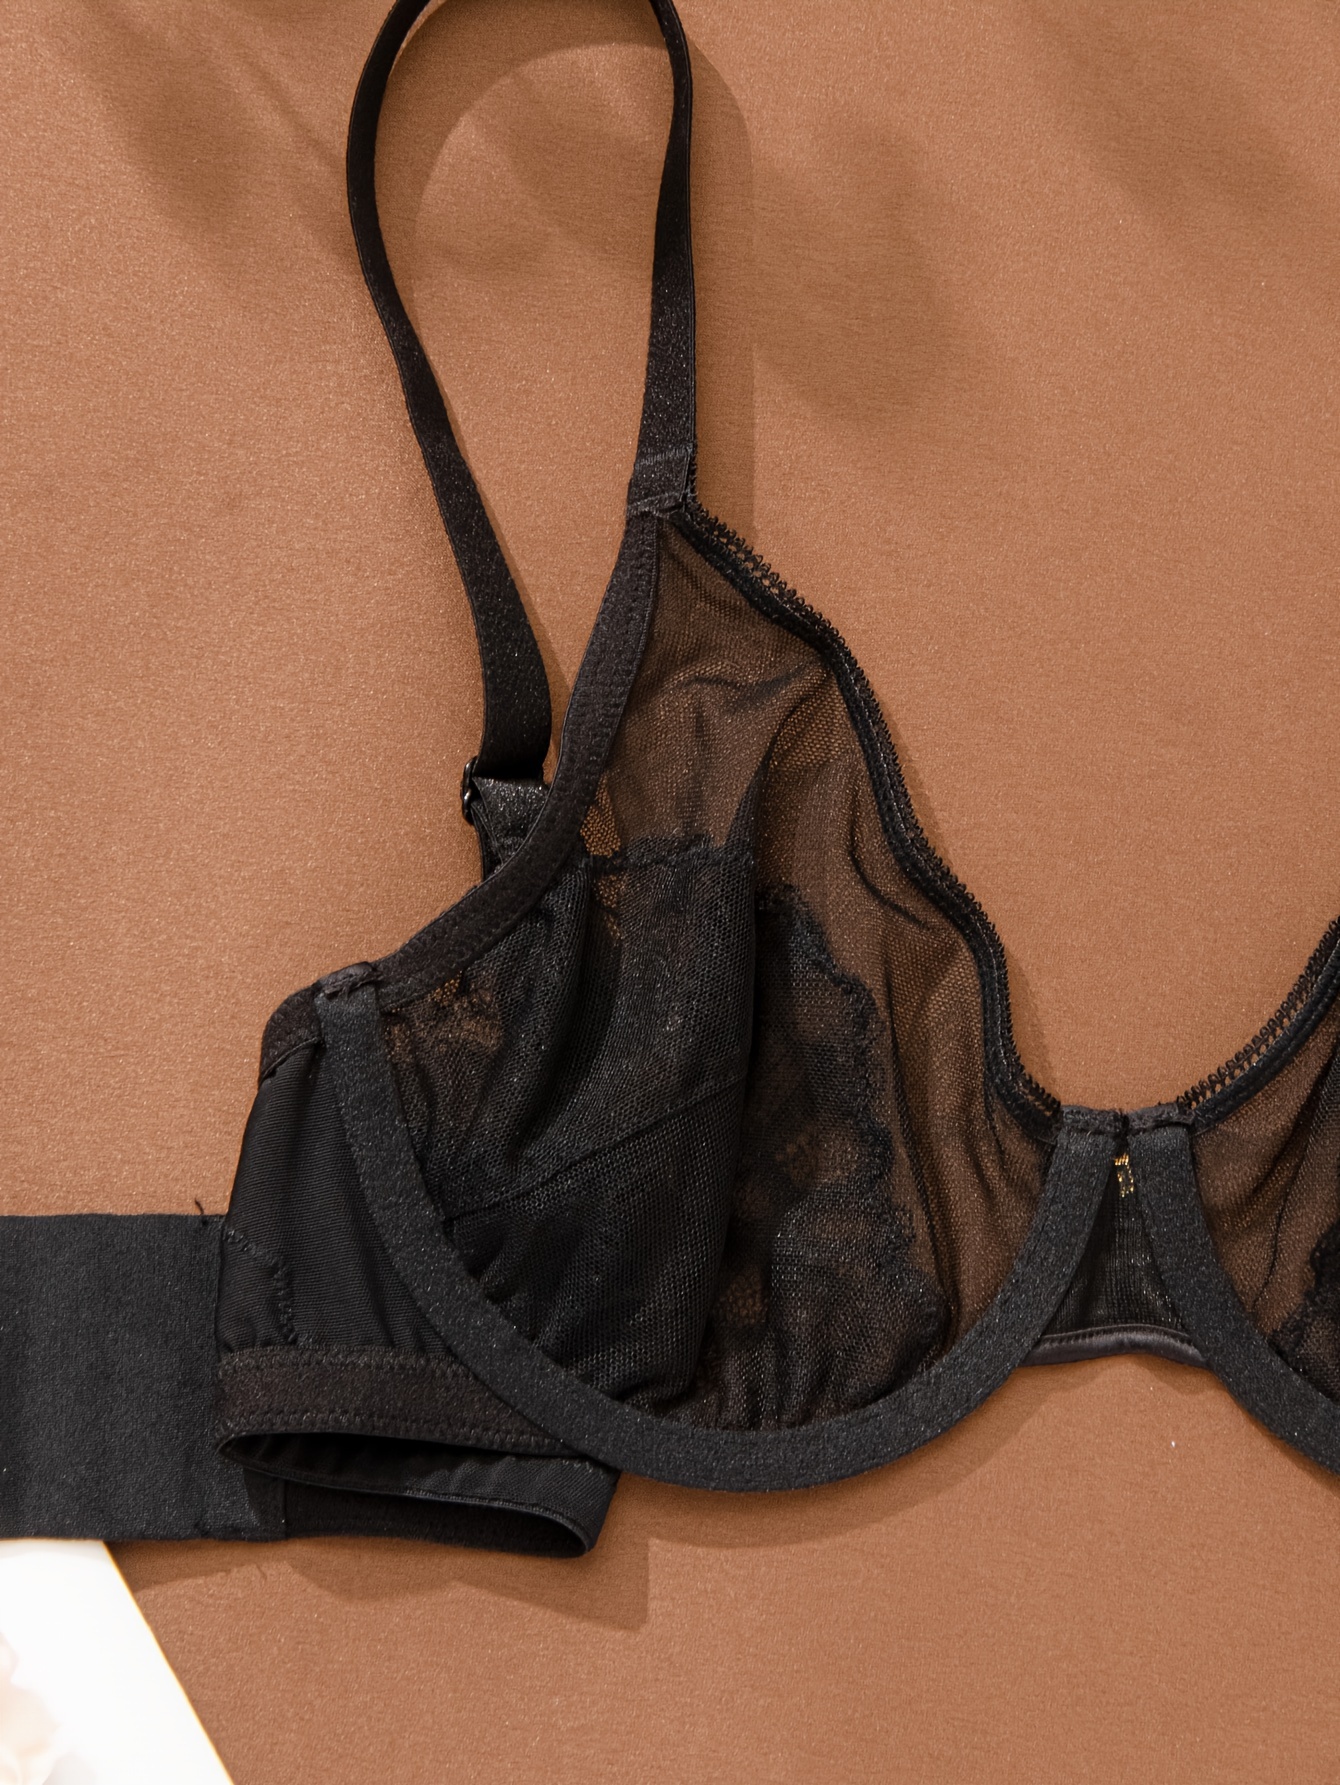 Deyllo Women's Non Padded Sheer Lace Bra Unlined Plus Size Underwire Bra,  Black 38DDD 